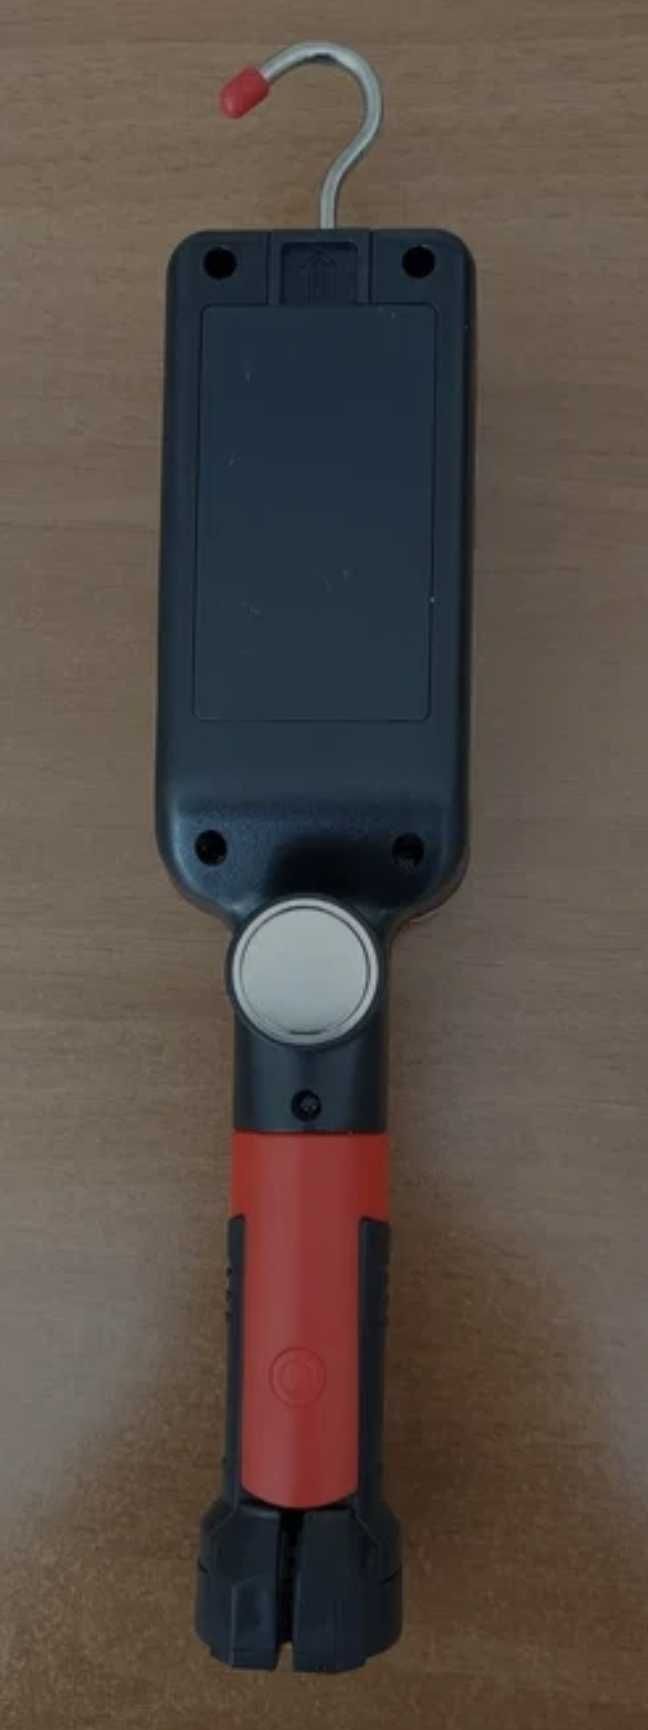 Аккумуляторный LED фонарь ZJ 8859 с магнитами и прищепкой